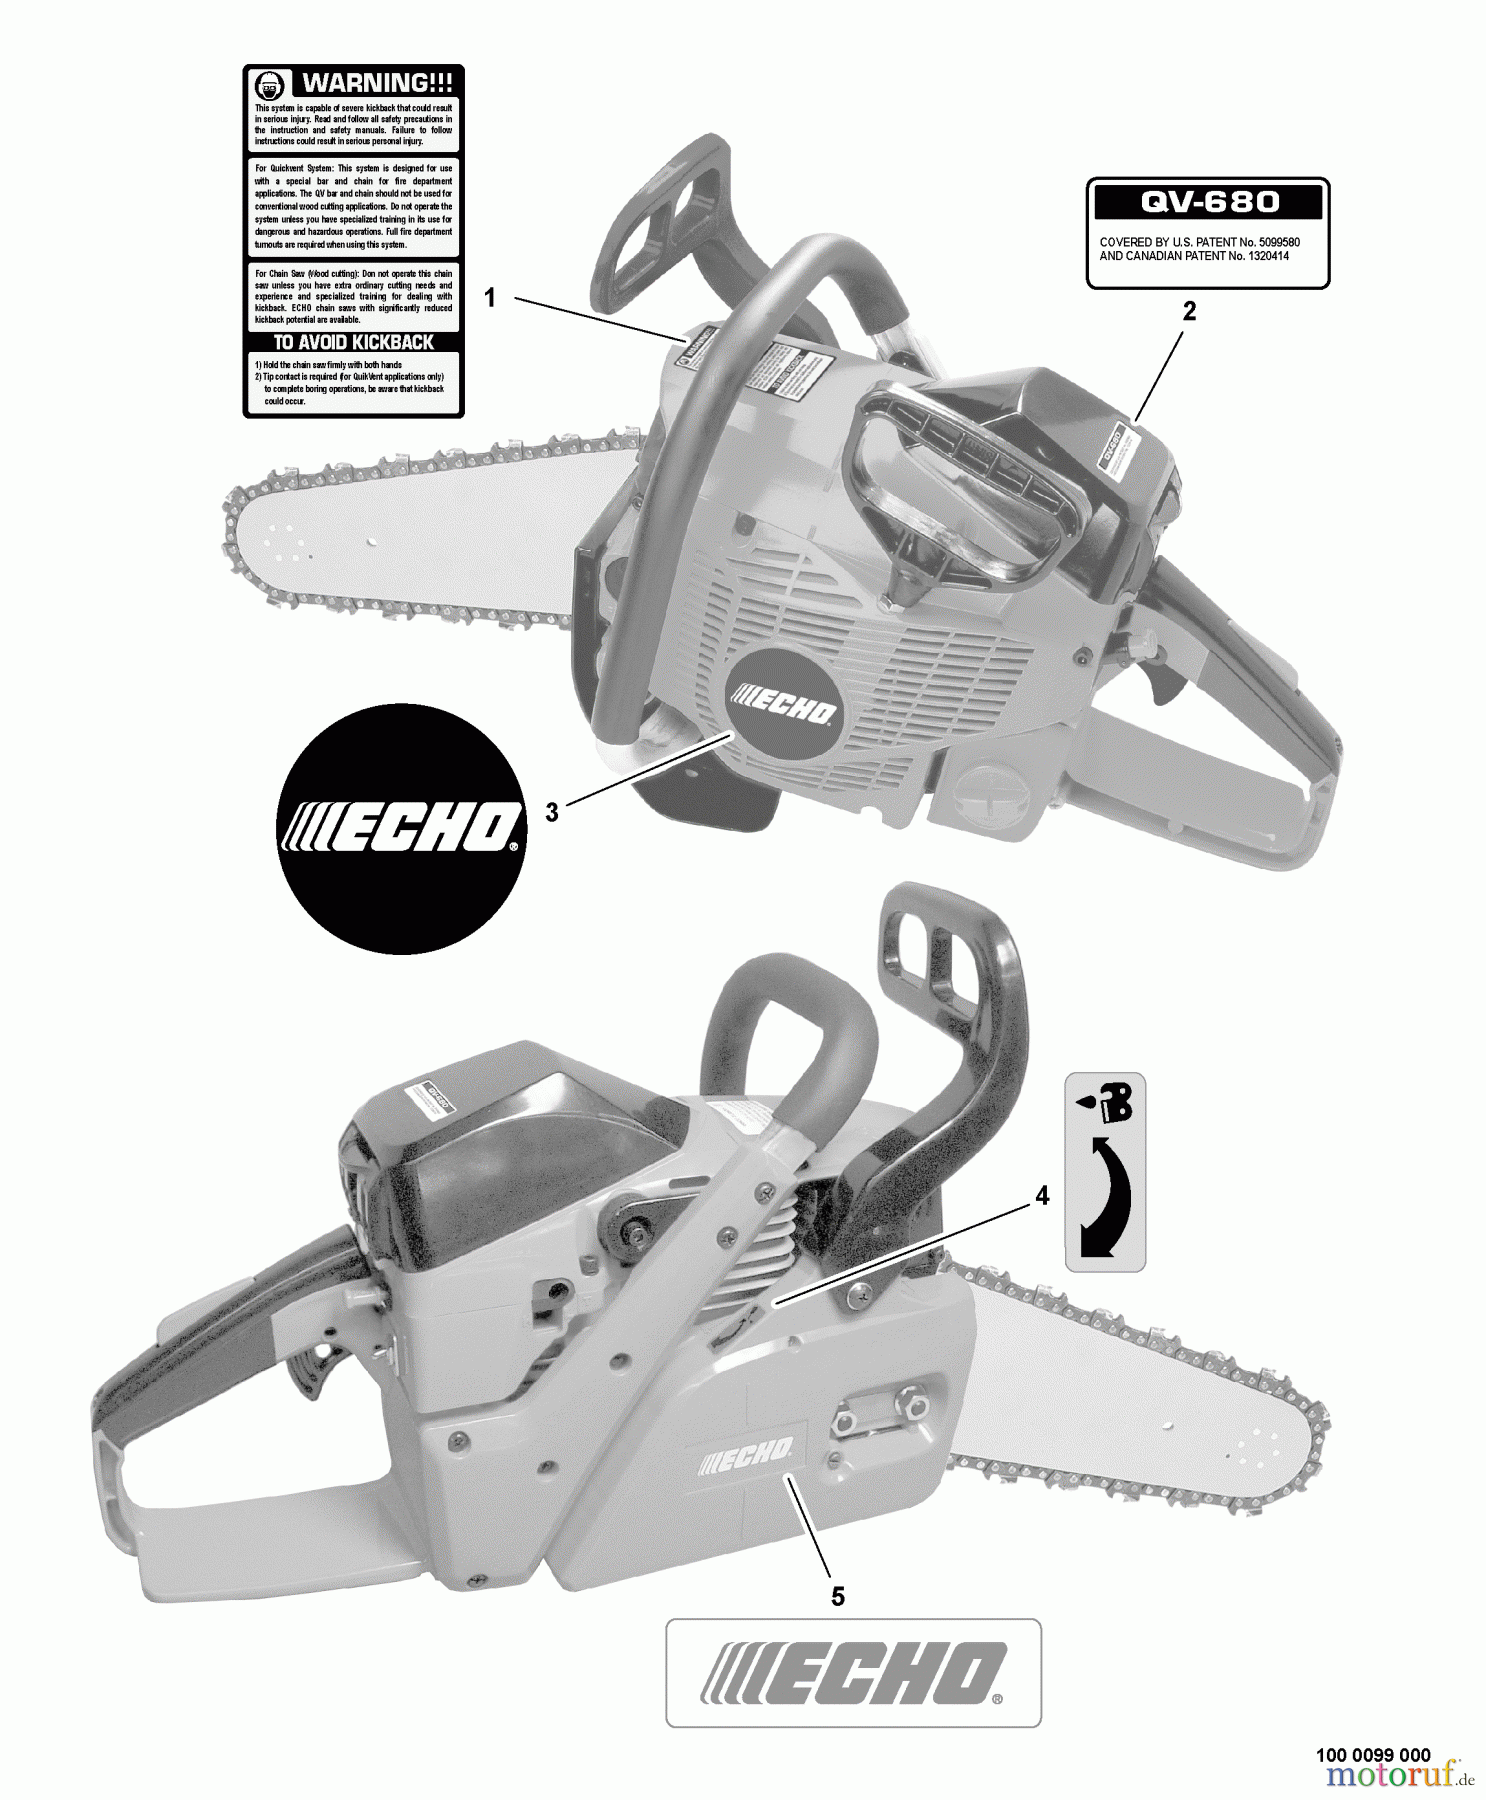  Echo Rettungssäge QV-680 - Echo Quick Vent Chain Saw, S/N: C03403001001 - C03403999999 Labels